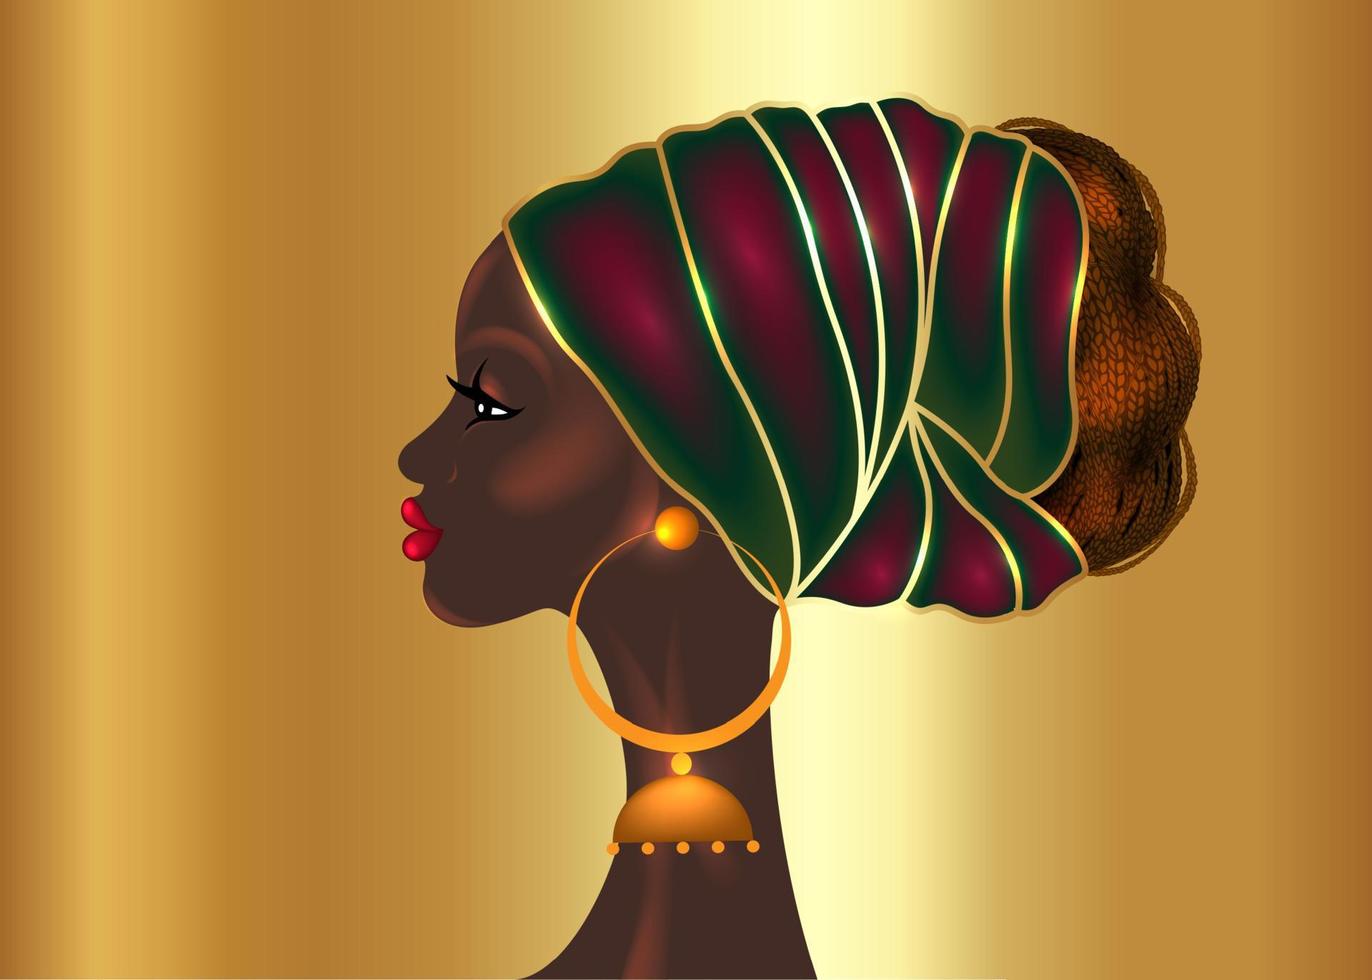 acconciatura afro, bellissimo ritratto di donna africana in turbante in tessuto con stampa a cera, concetto di diversità. regina nera, cravatta etnica per trecce afro e capelli ricci crespi. vettore isolato su sfondo oro